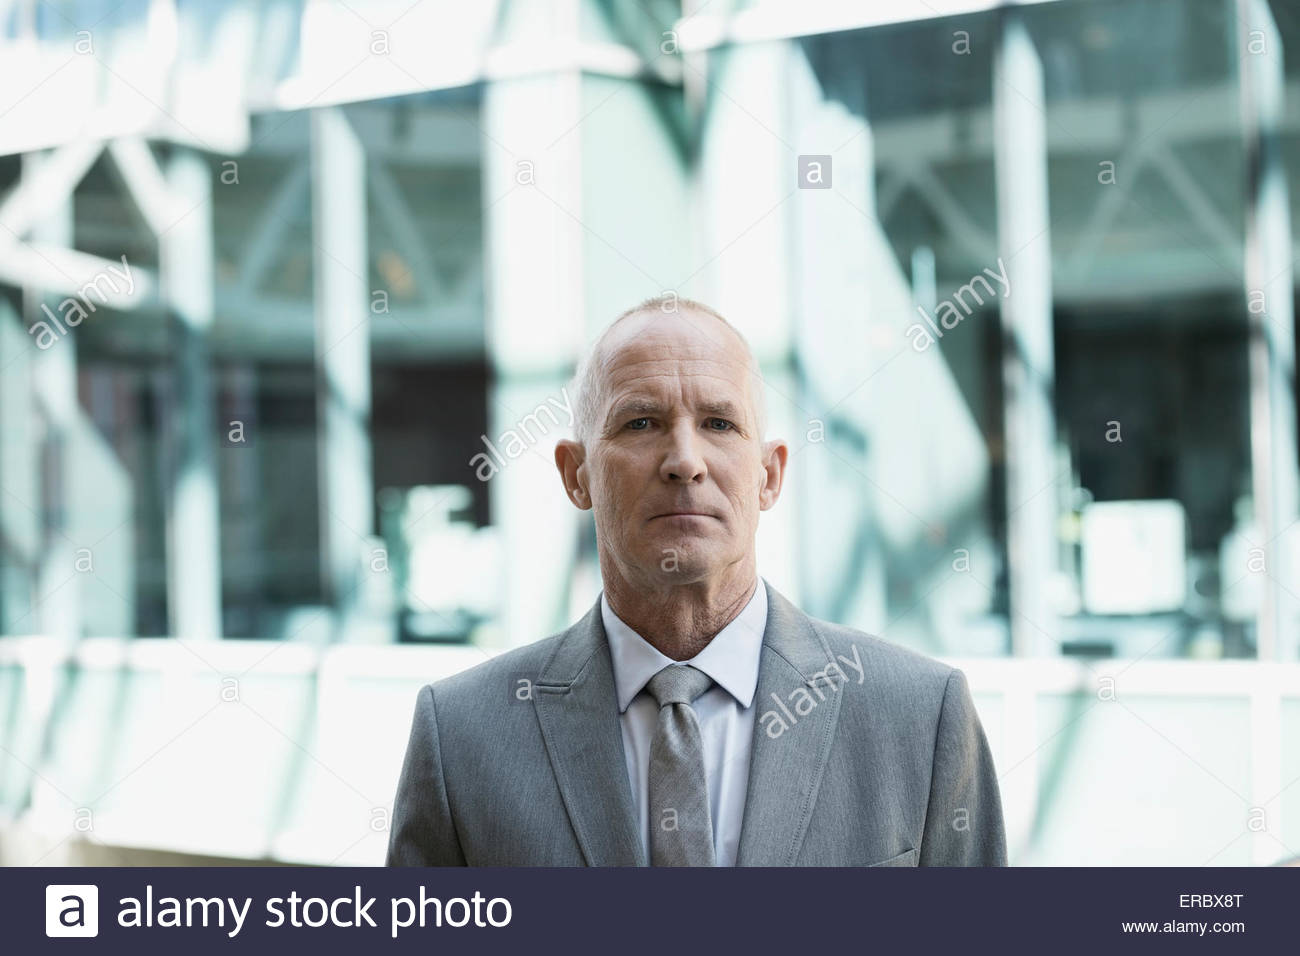 Portrait of serious businessman in suit Banque D'Images